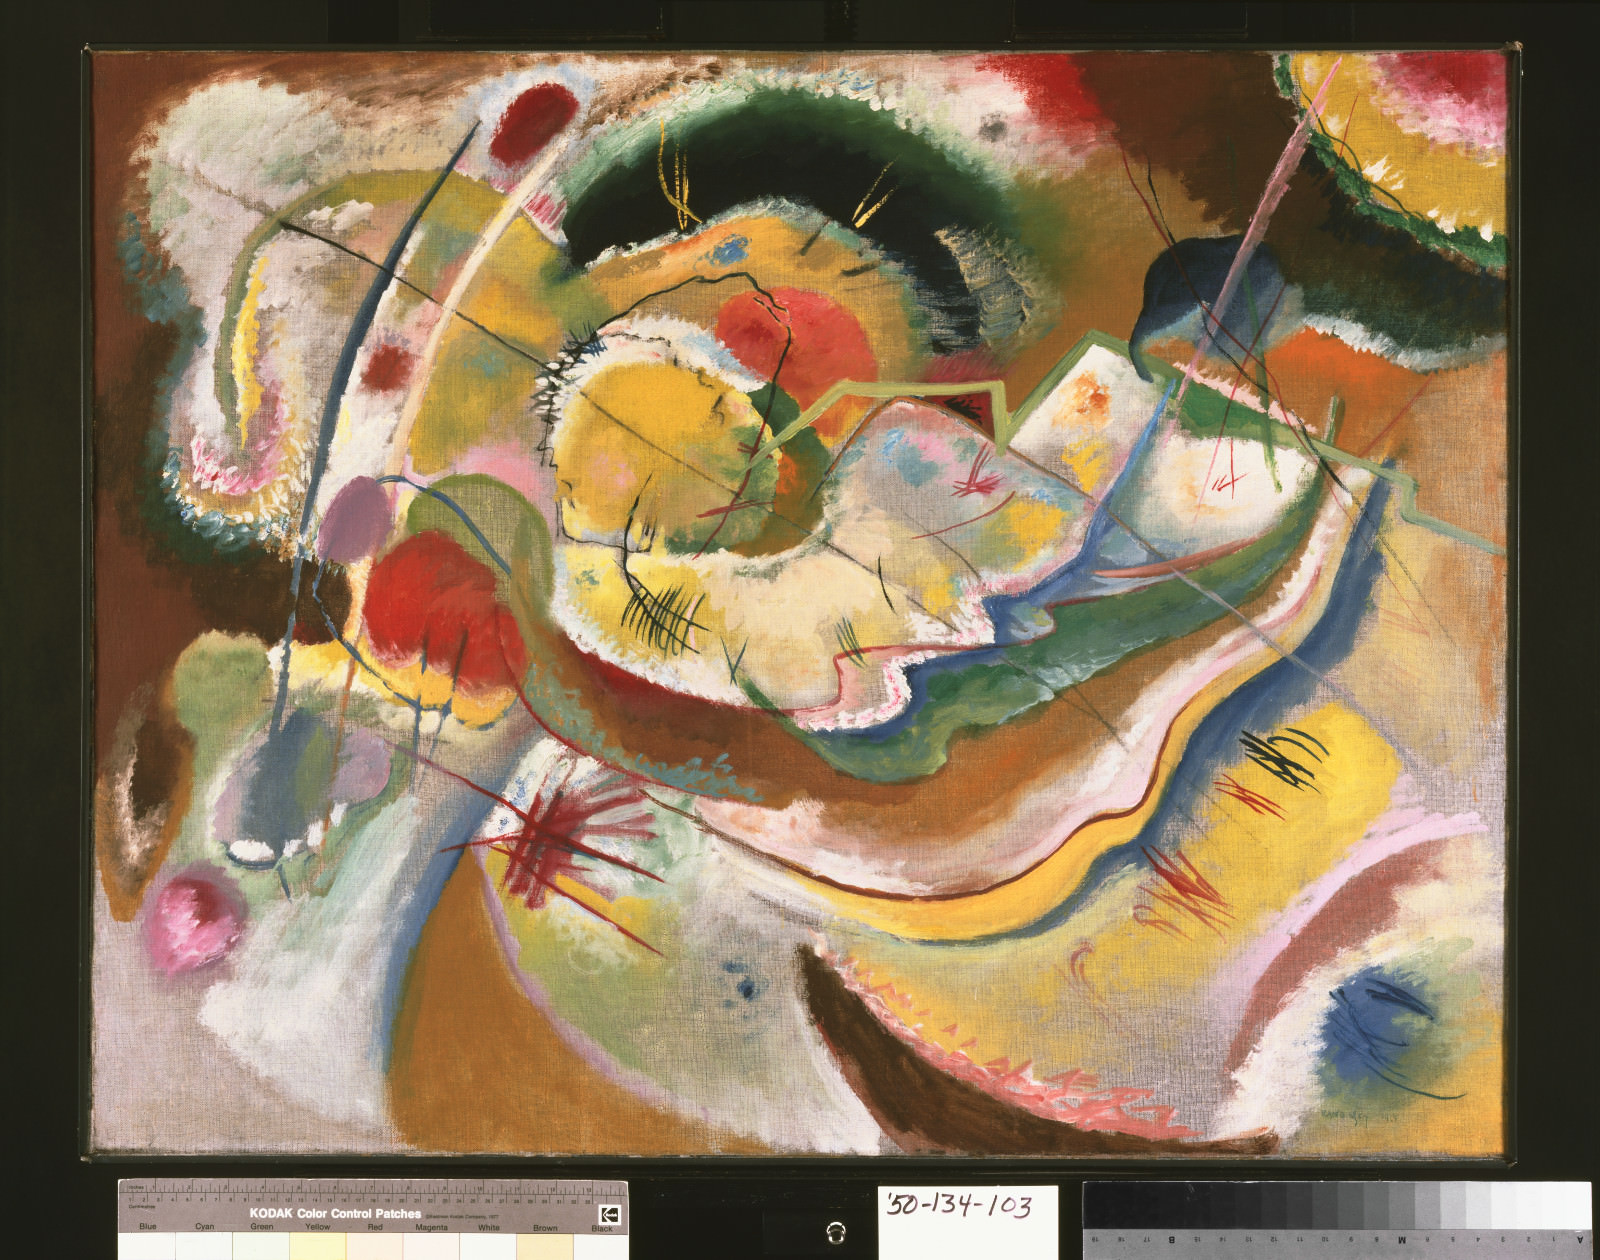 Fig. 4 – Vasily Kandinsky, Pequena Pintura com Amarelo (Improvisação), 1914, óleo sobre tela, 31 x 39 5/8 polegadas (78.7 x 100.6 cm) Emoldurado: 32 3/4 x 41 1/2 x 2 1/2 polegadas (83.2 x 105.4 x 6.4 cm). Philadelphia Museum of Art, The Louise and Walter Arensberg Collection, 1950-134-103.